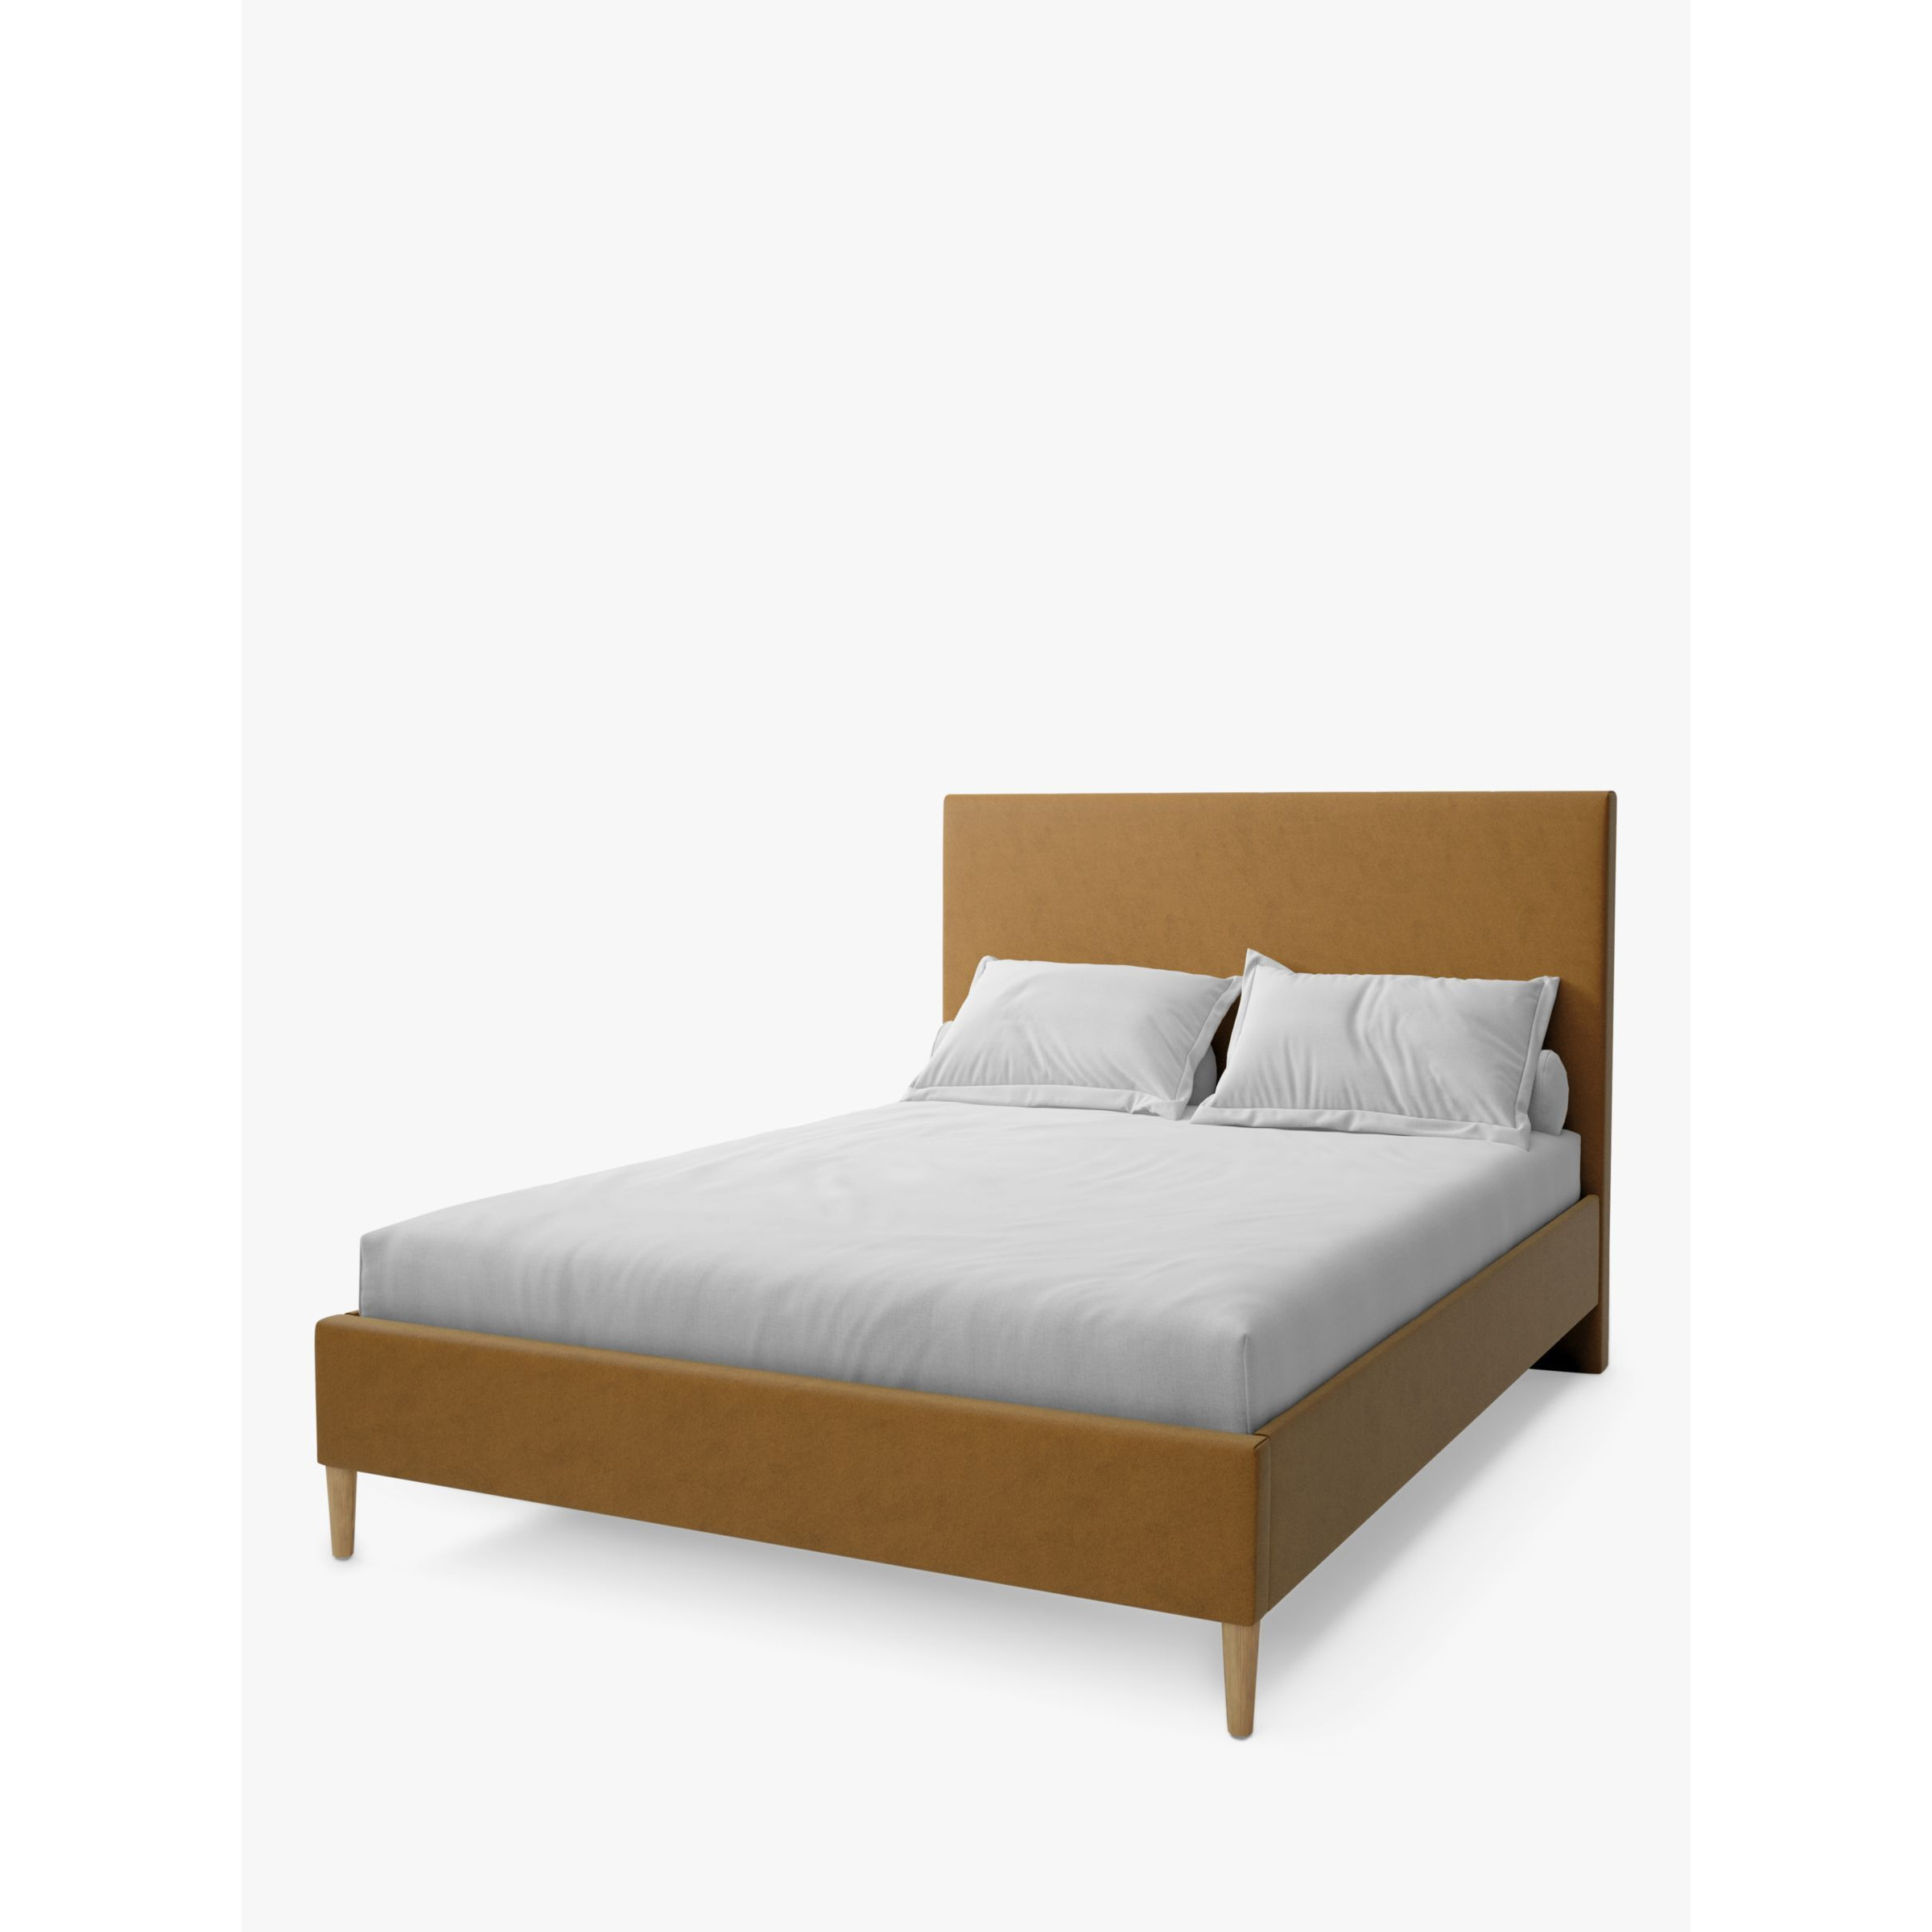 Koti Home Dee Upholstered Bed Frame, King Size - image 1